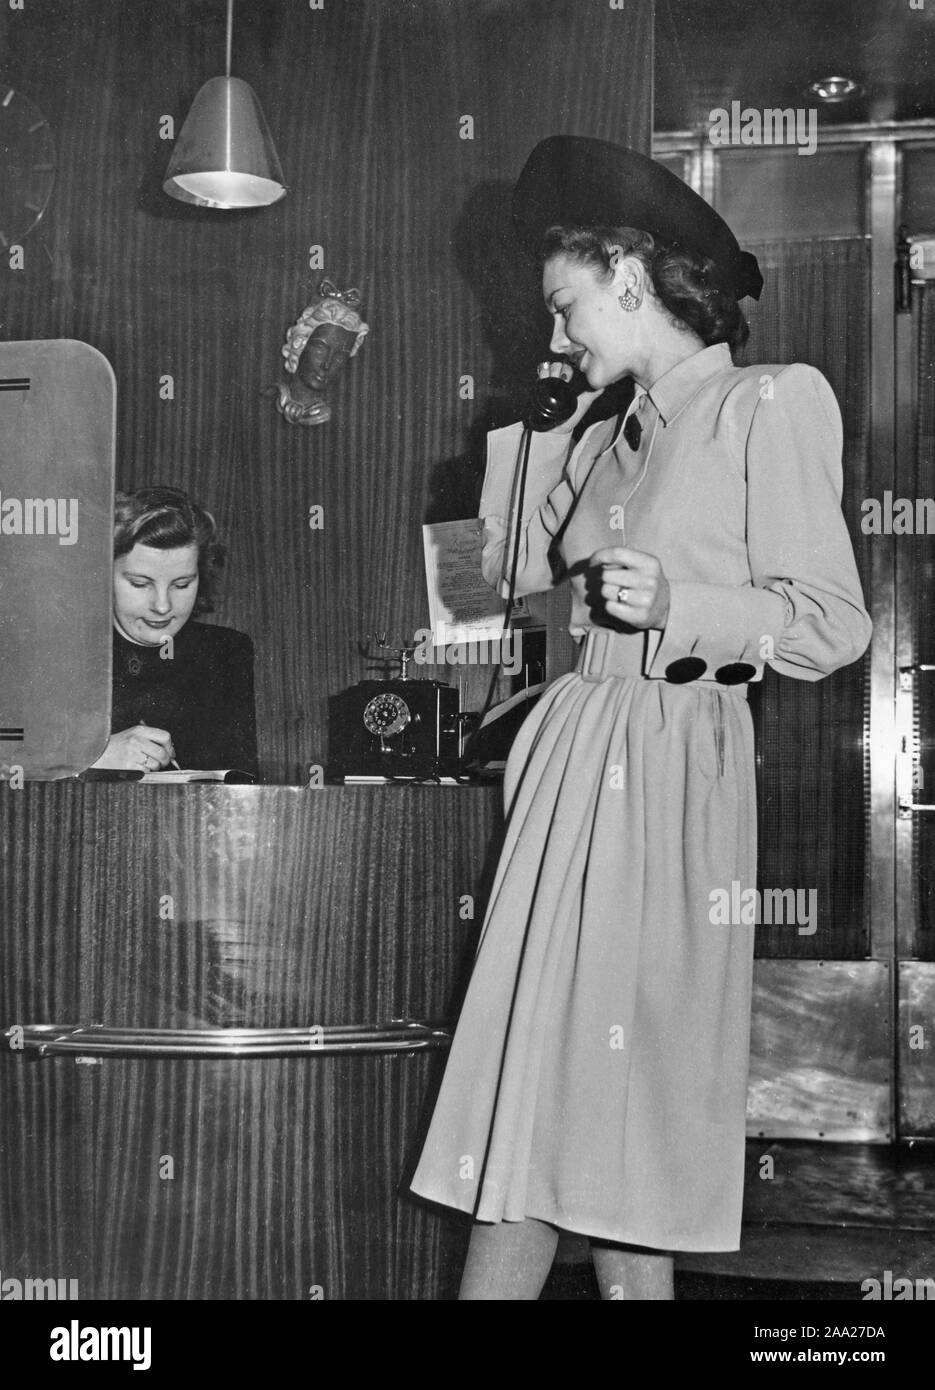 La mode féminine dans les années 40. Une jeune femme en costume typique des années 40 est en train de parler au téléphone. La tenue d'été est fabriqué par Williams - mode à Stockholm. Suède 1947 Banque D'Images